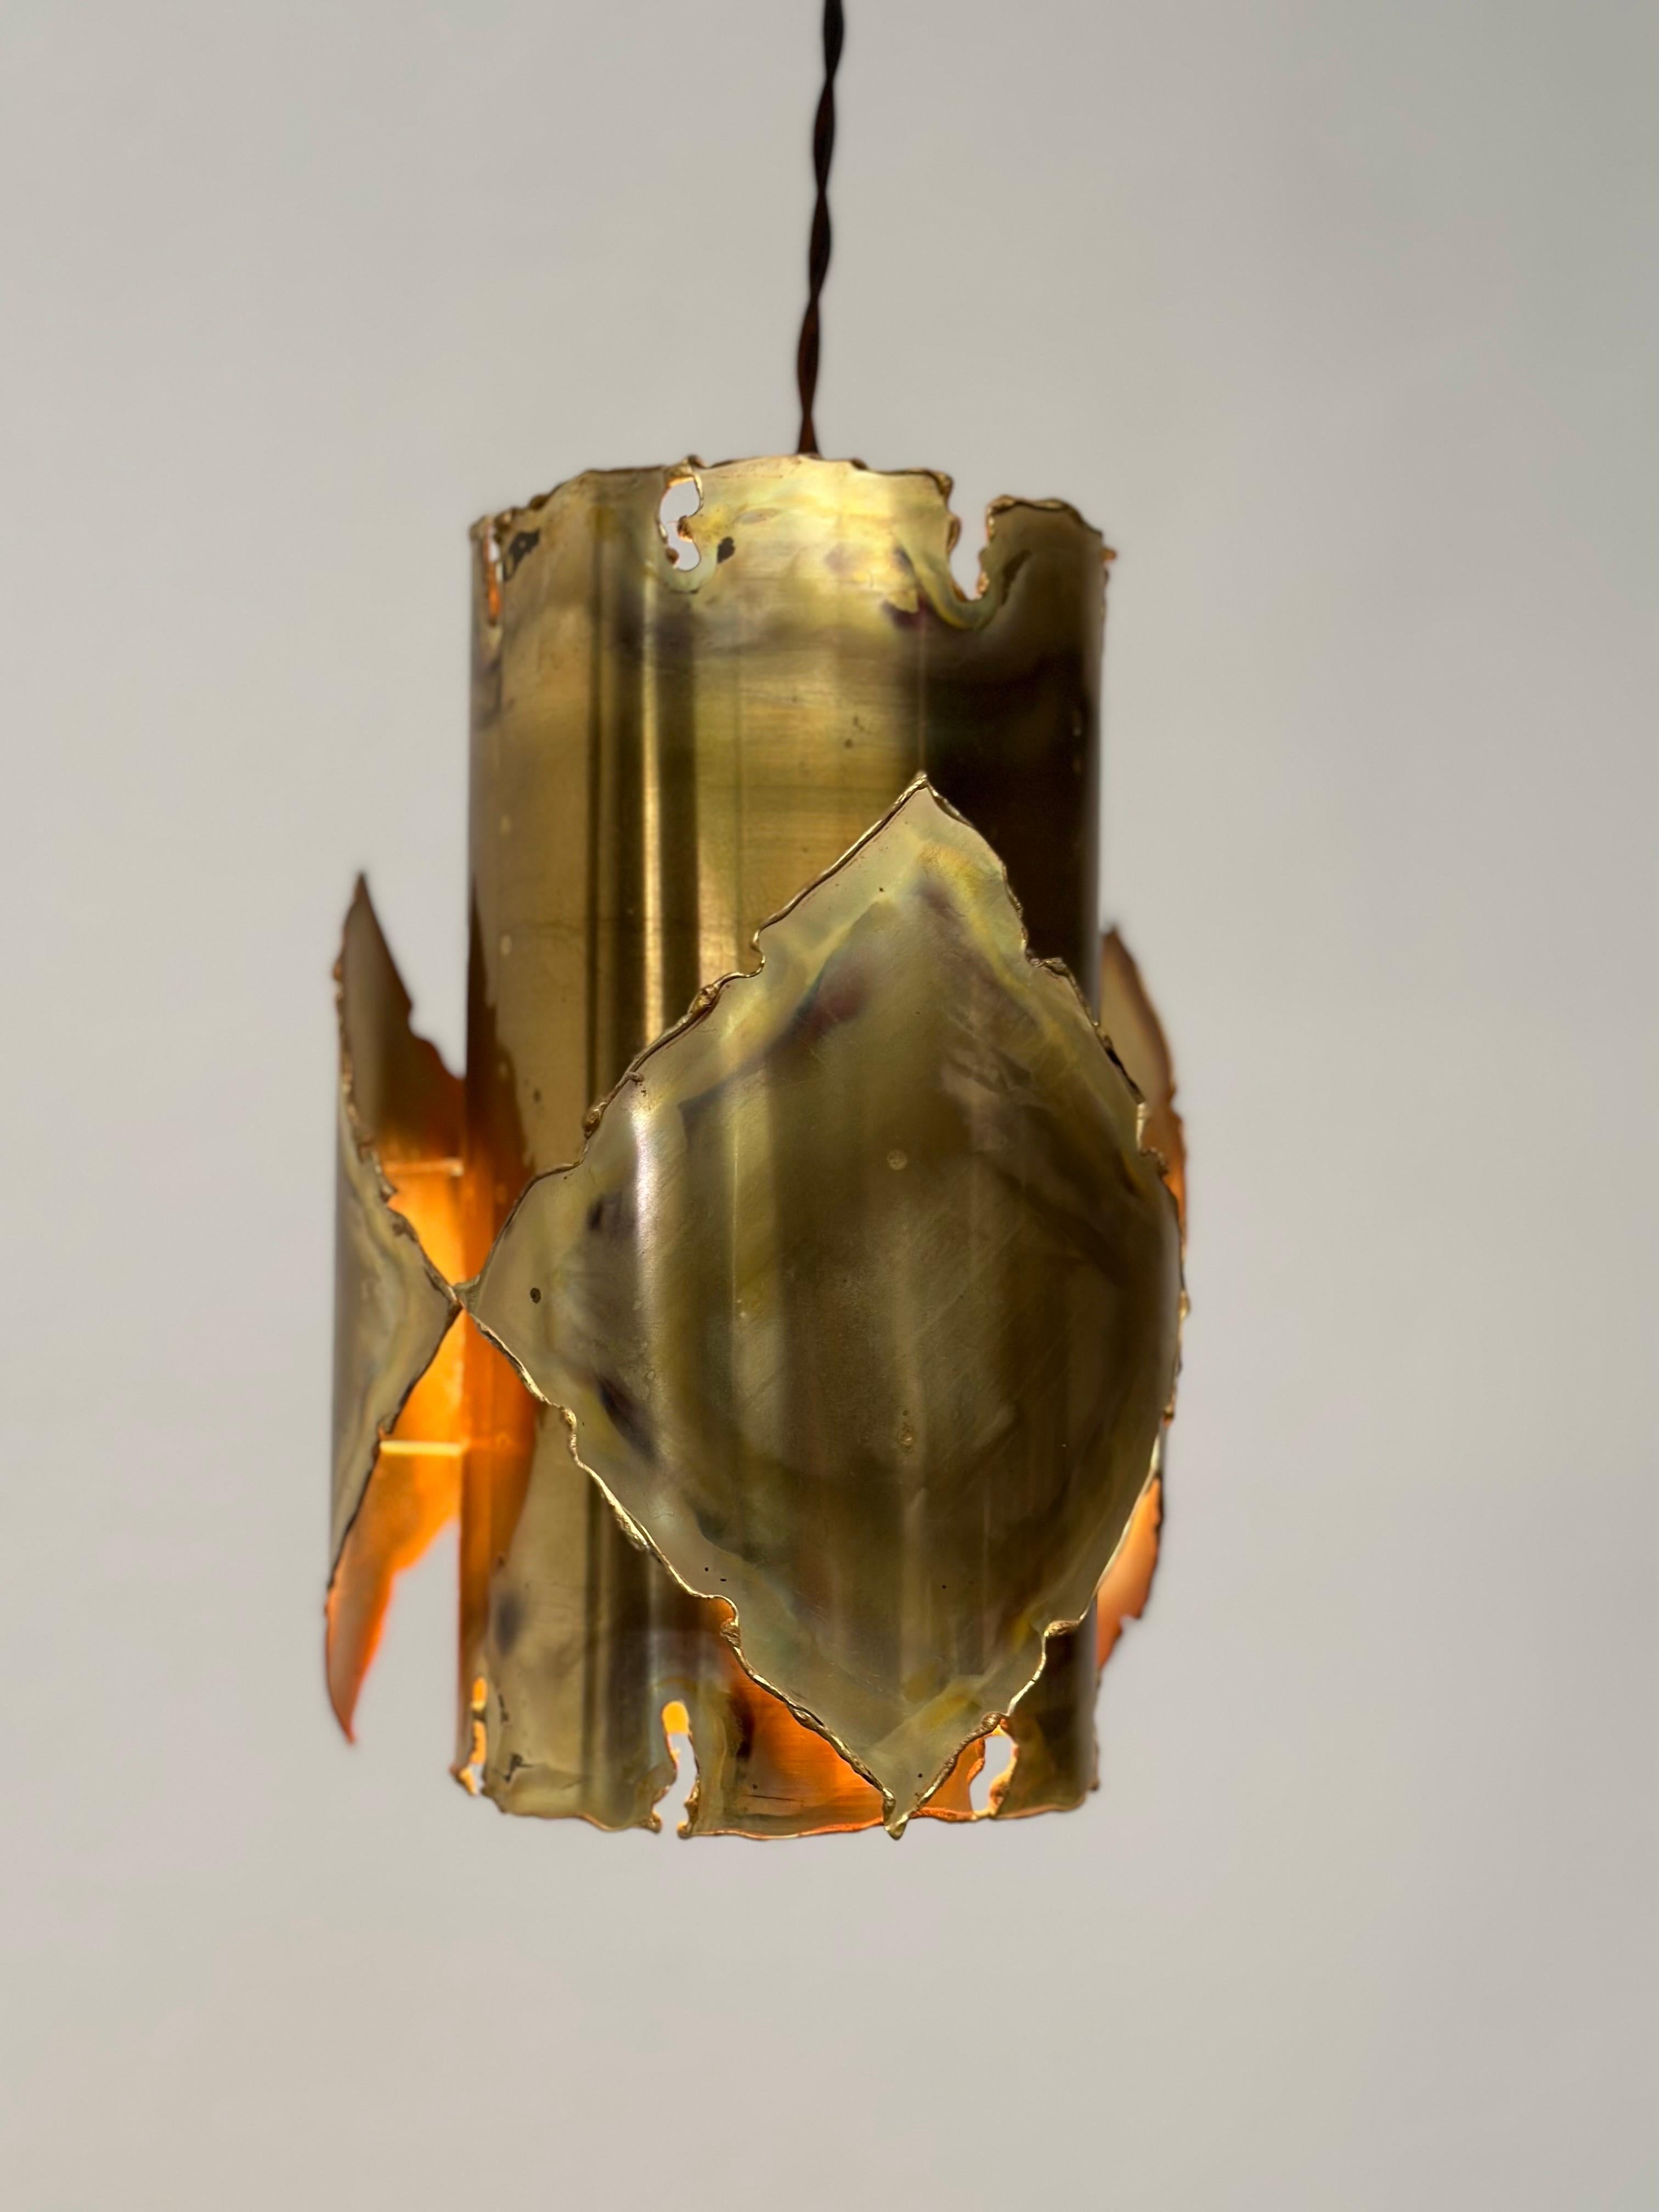 Exquise lampe de plafond brutaliste en laiton de Sven Aage Jensen pour Holm Sørensen (années 1960)

Découvrez l'essence de l'élégance moderne du milieu du siècle avec cette remarquable lampe brutaliste en laiton pour plafond, une création captivante